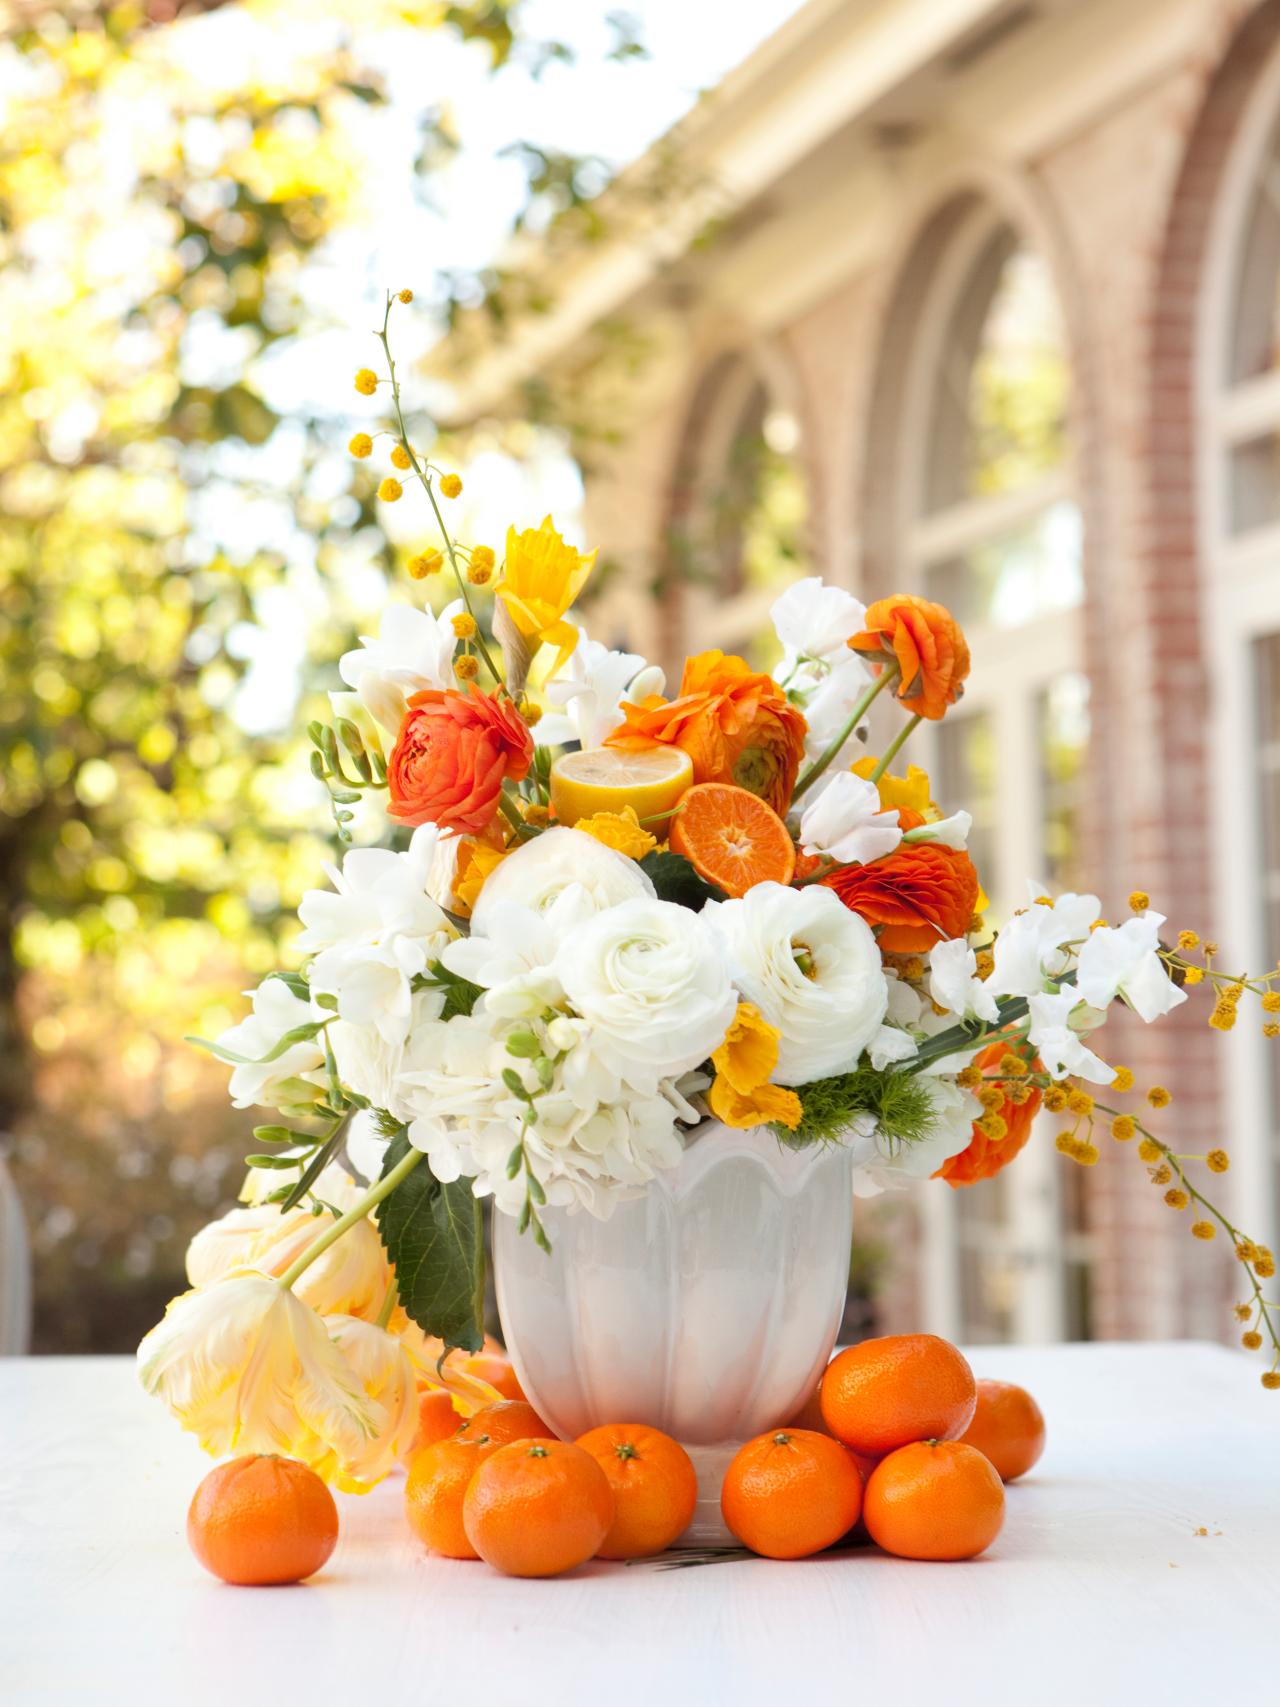 déco bouquet joli pâques printemps fleurs oranges fruit vase table blanc